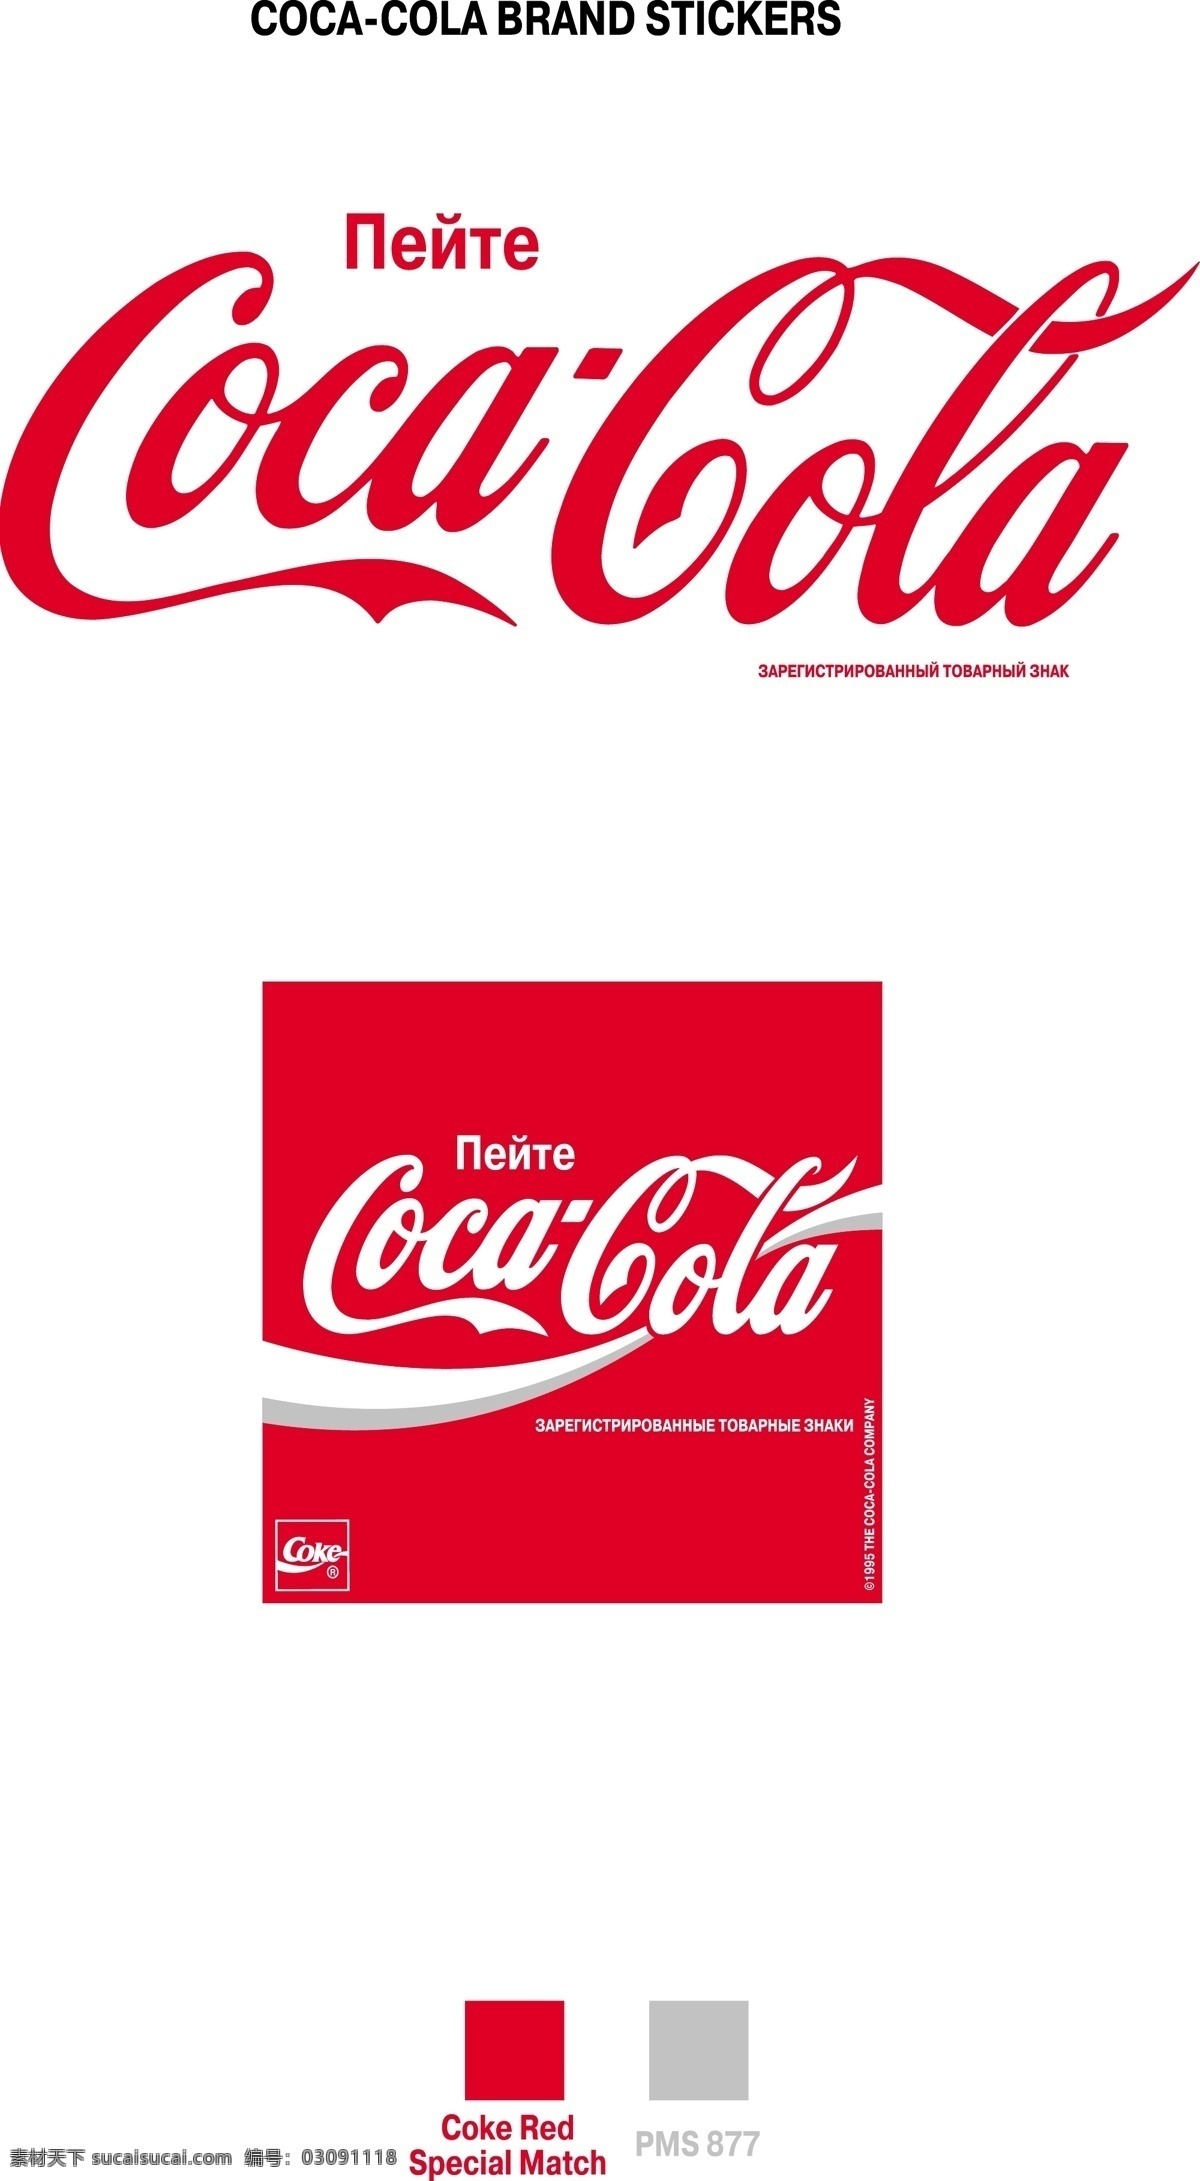 可口可乐 免费 标志 自由 psd源文件 logo设计